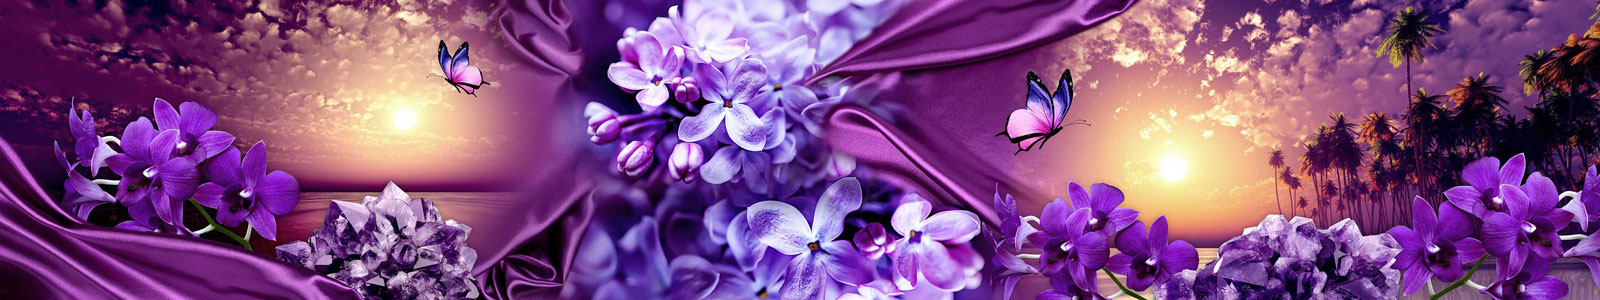 №4182 - Коллаж в пурпурно-фиолетовом цвете